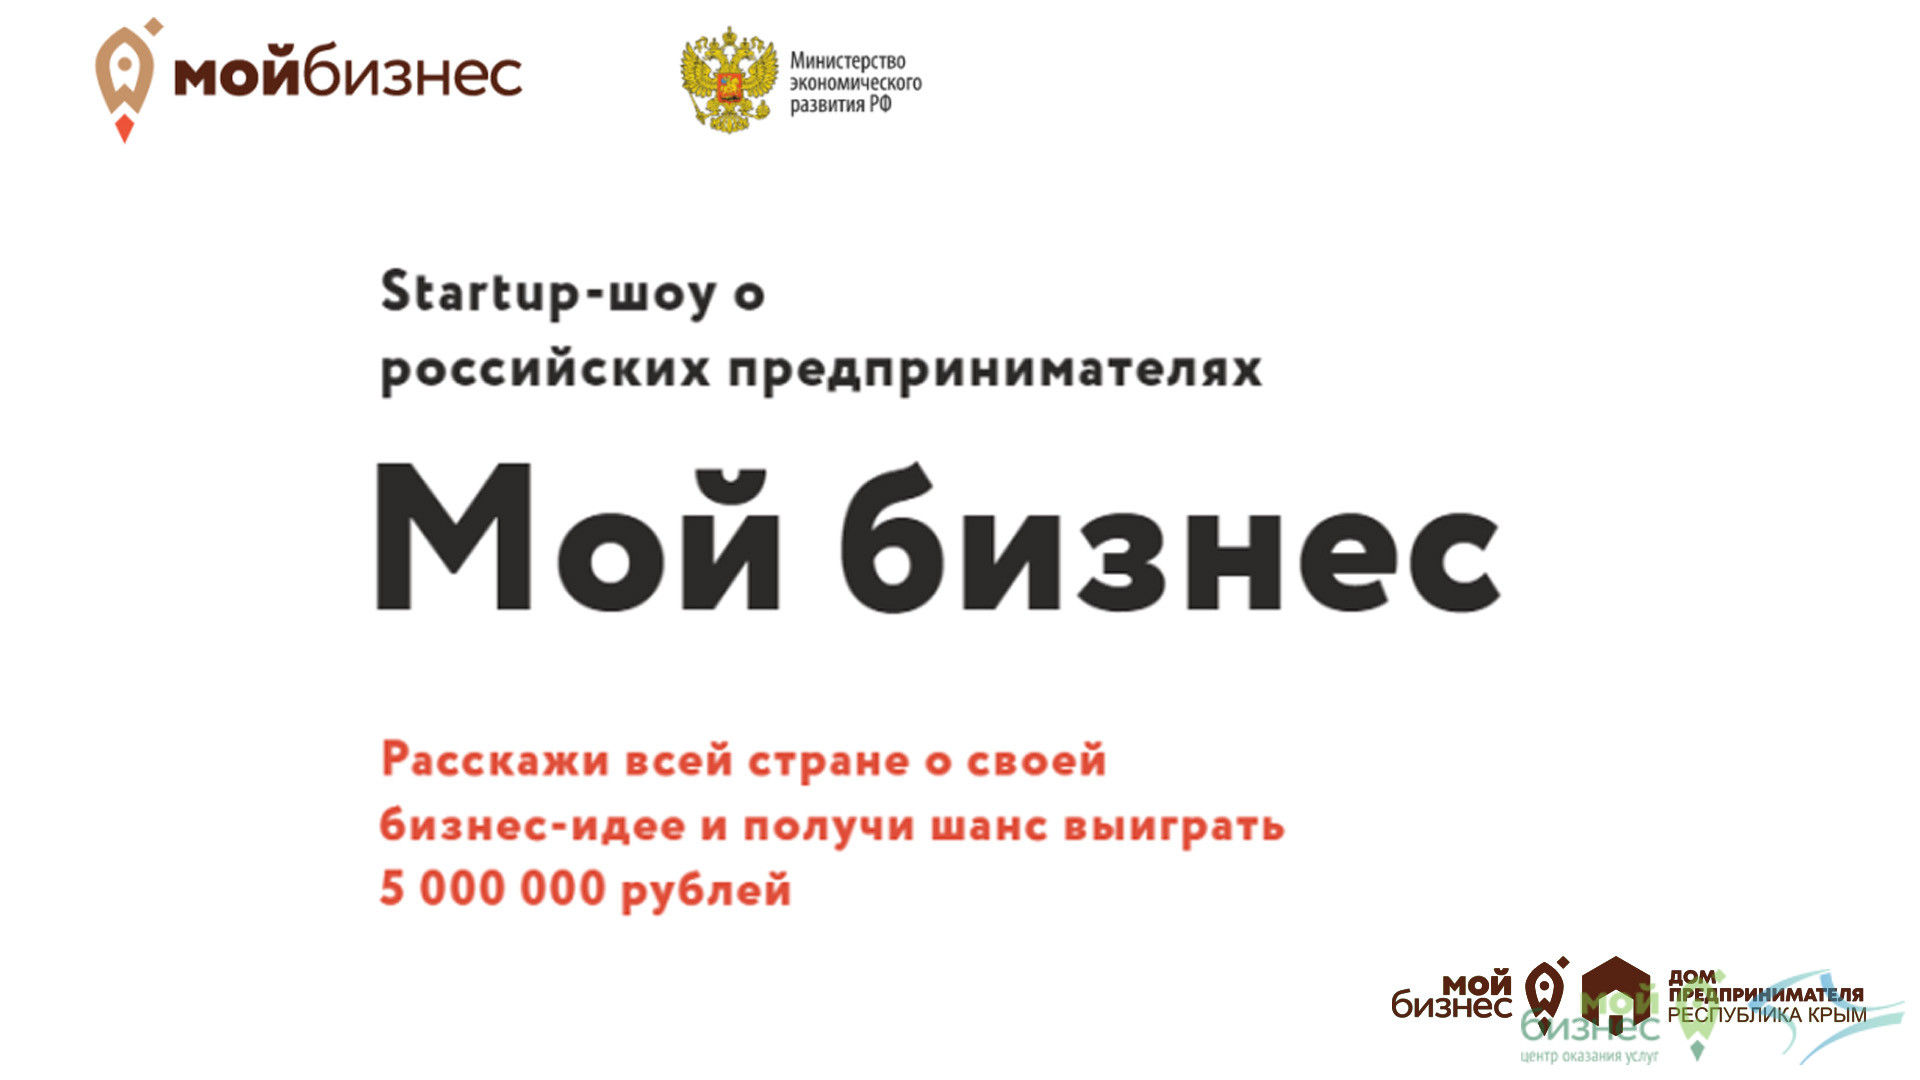 Республика Крым – один из лидеров по подачи заявок на участие в в startup-шоу для предпринимателей